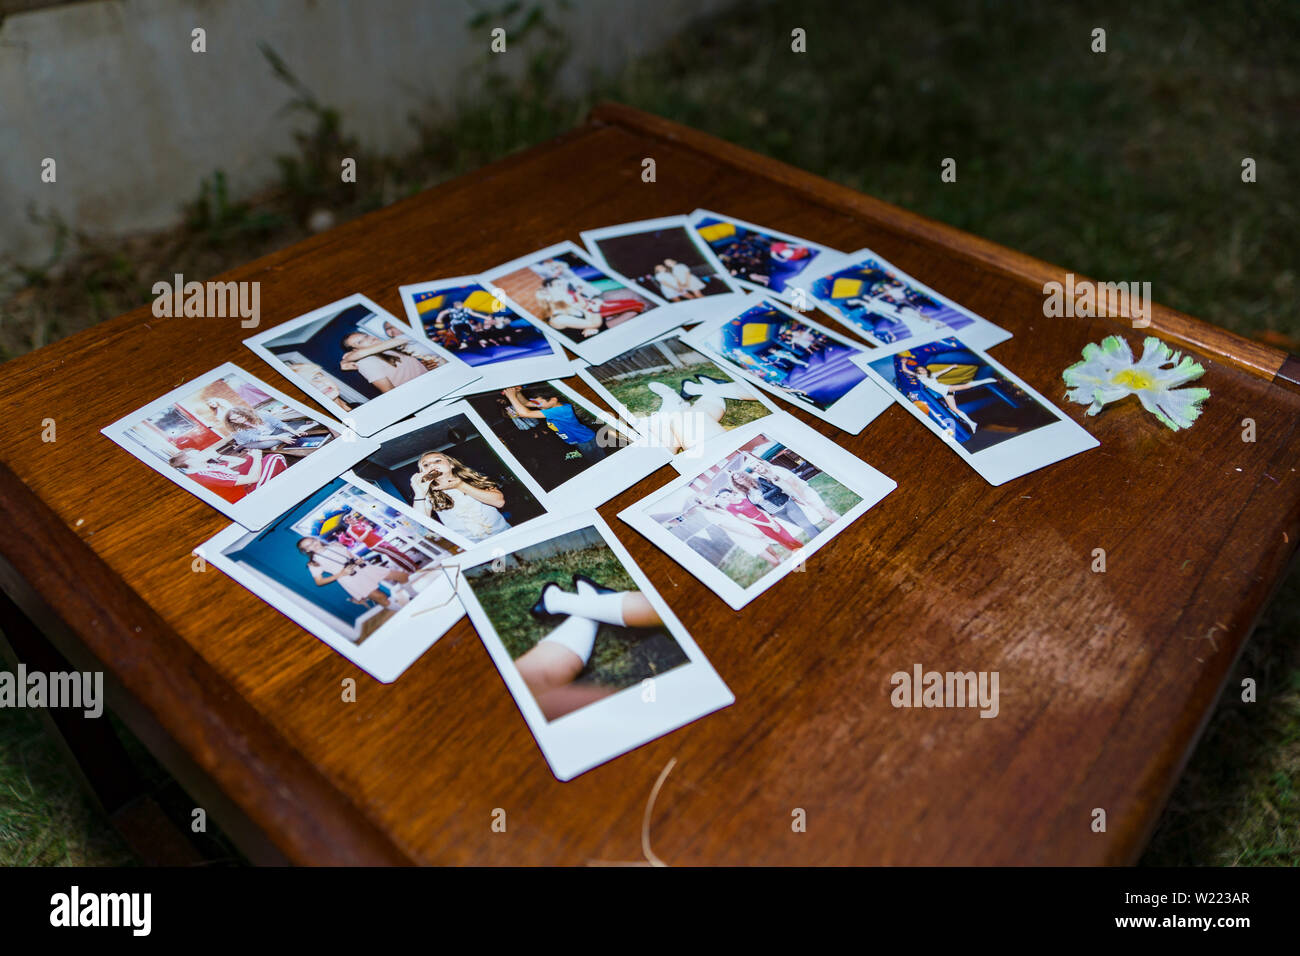 Raccolta di foto polaroid immagini prese da un istante fotocamera, visualizzata su un tavolo di legno Foto Stock